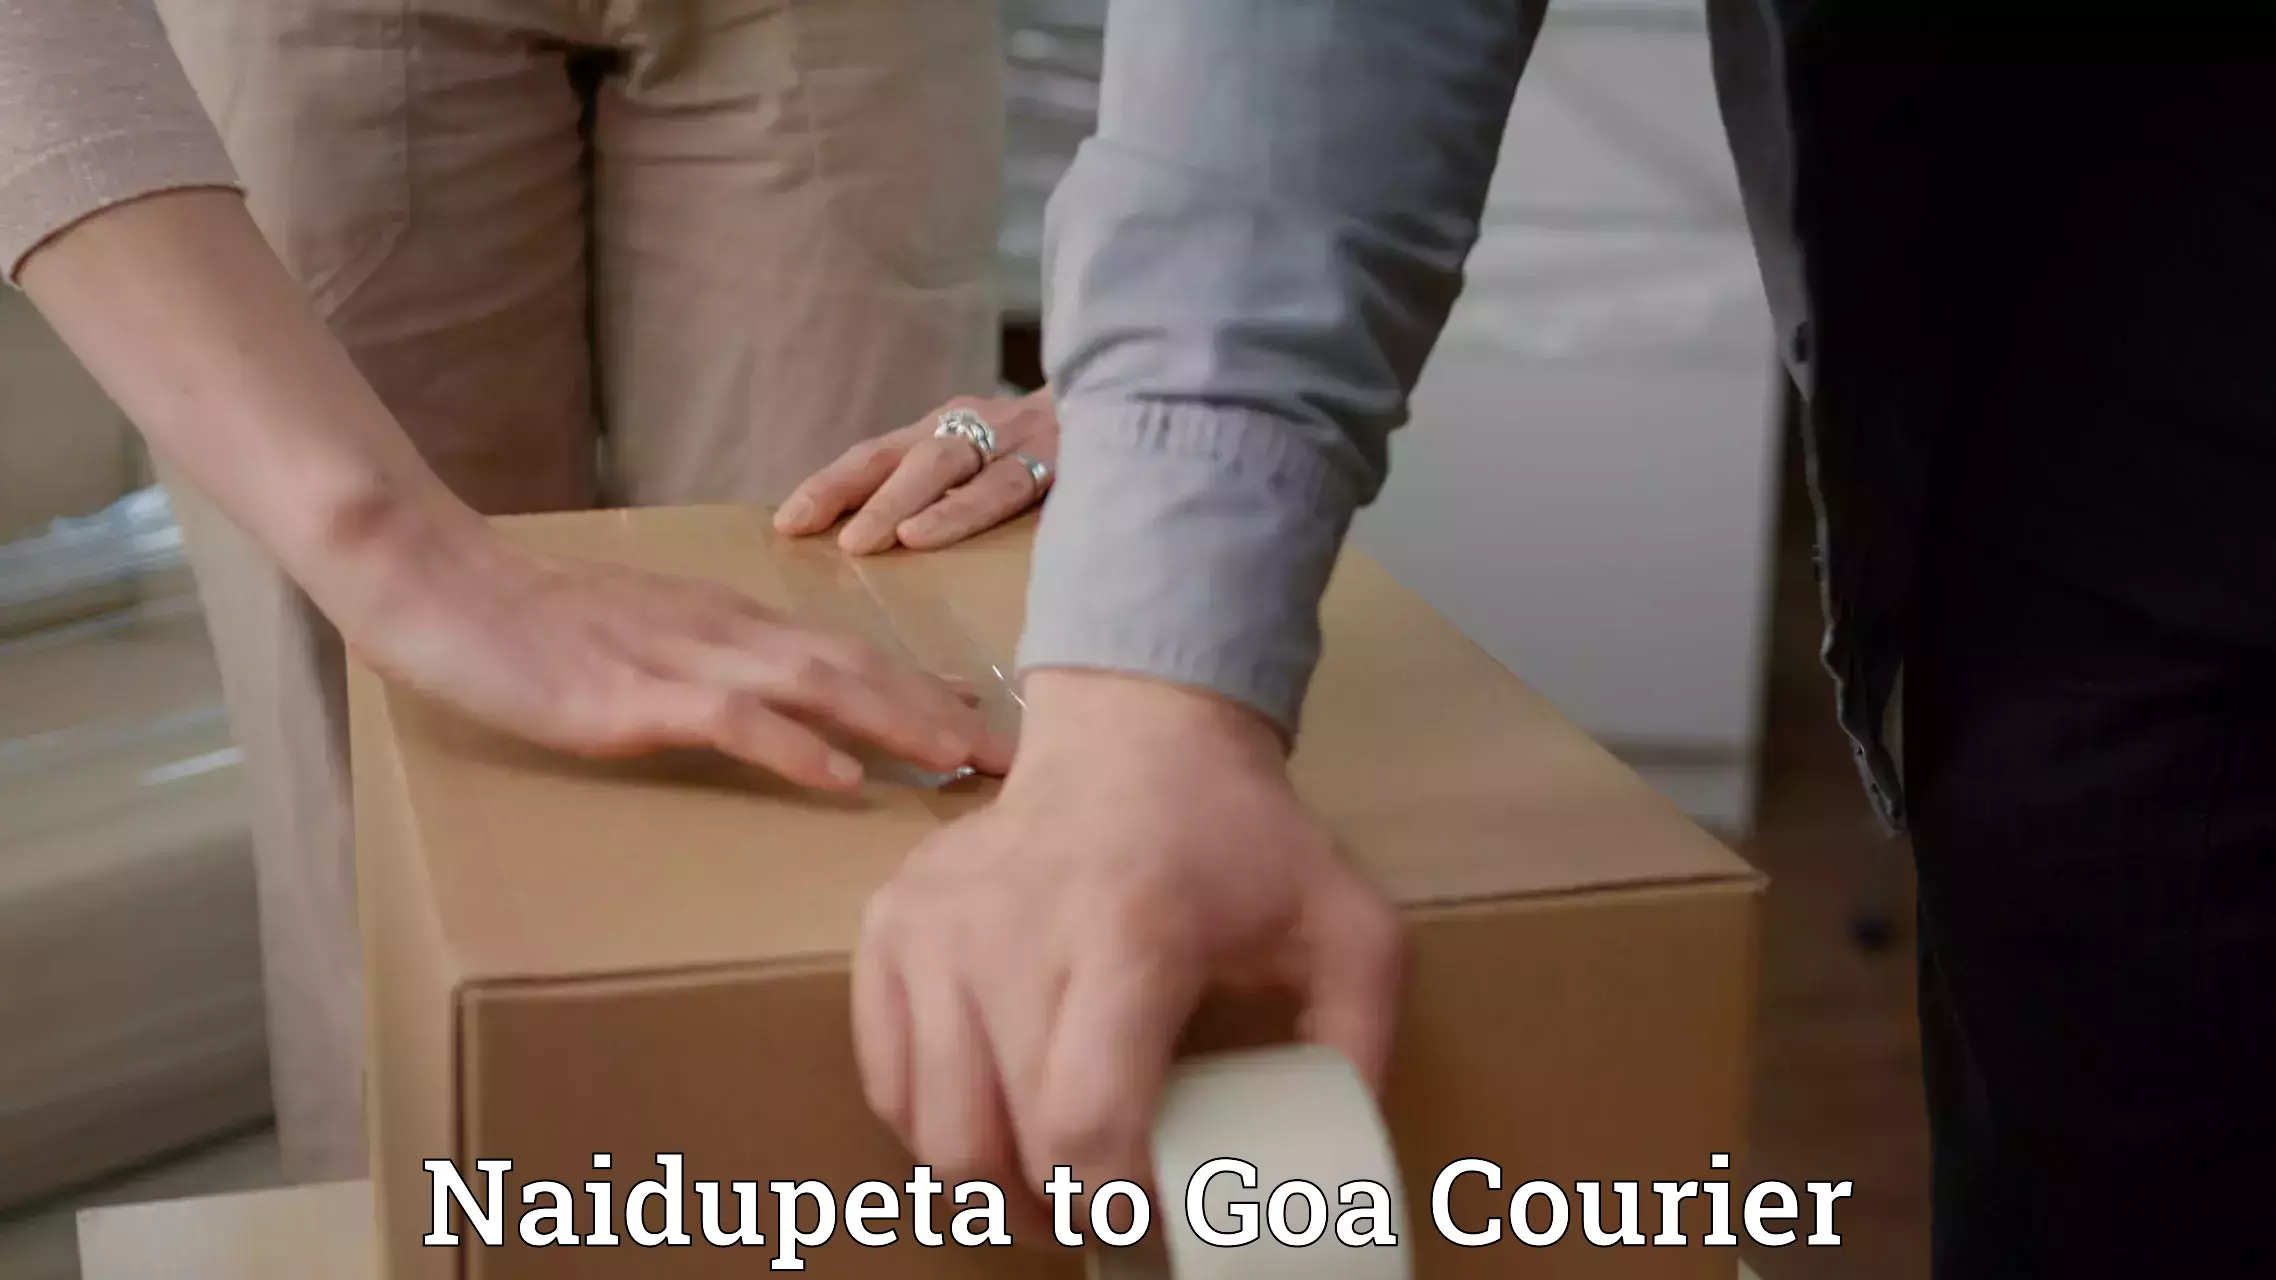 Efficient freight service Naidupeta to Goa